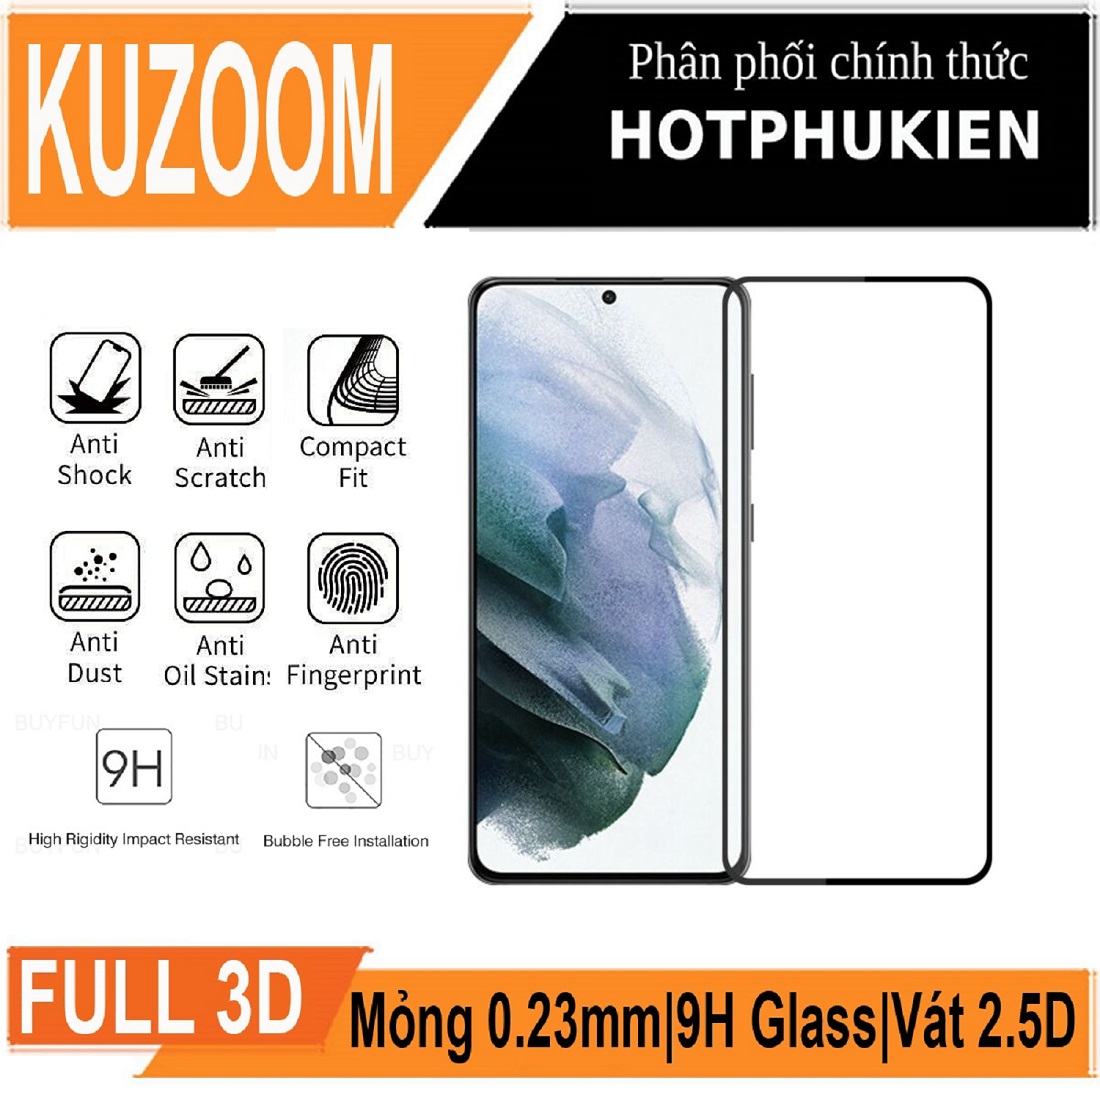 Miếng dán kính cường lực 3D cho Samsung Galaxy S22 / Galaxy S22 Ultra / Galaxy S22 Plus / Galaxy S22+ hiệu Kuzoom Protective Glass - mỏng 0.3mm, vát cạnh 2.5D, độ cứng 9H, viền cứng mỏng - Hàng nhập khẩu